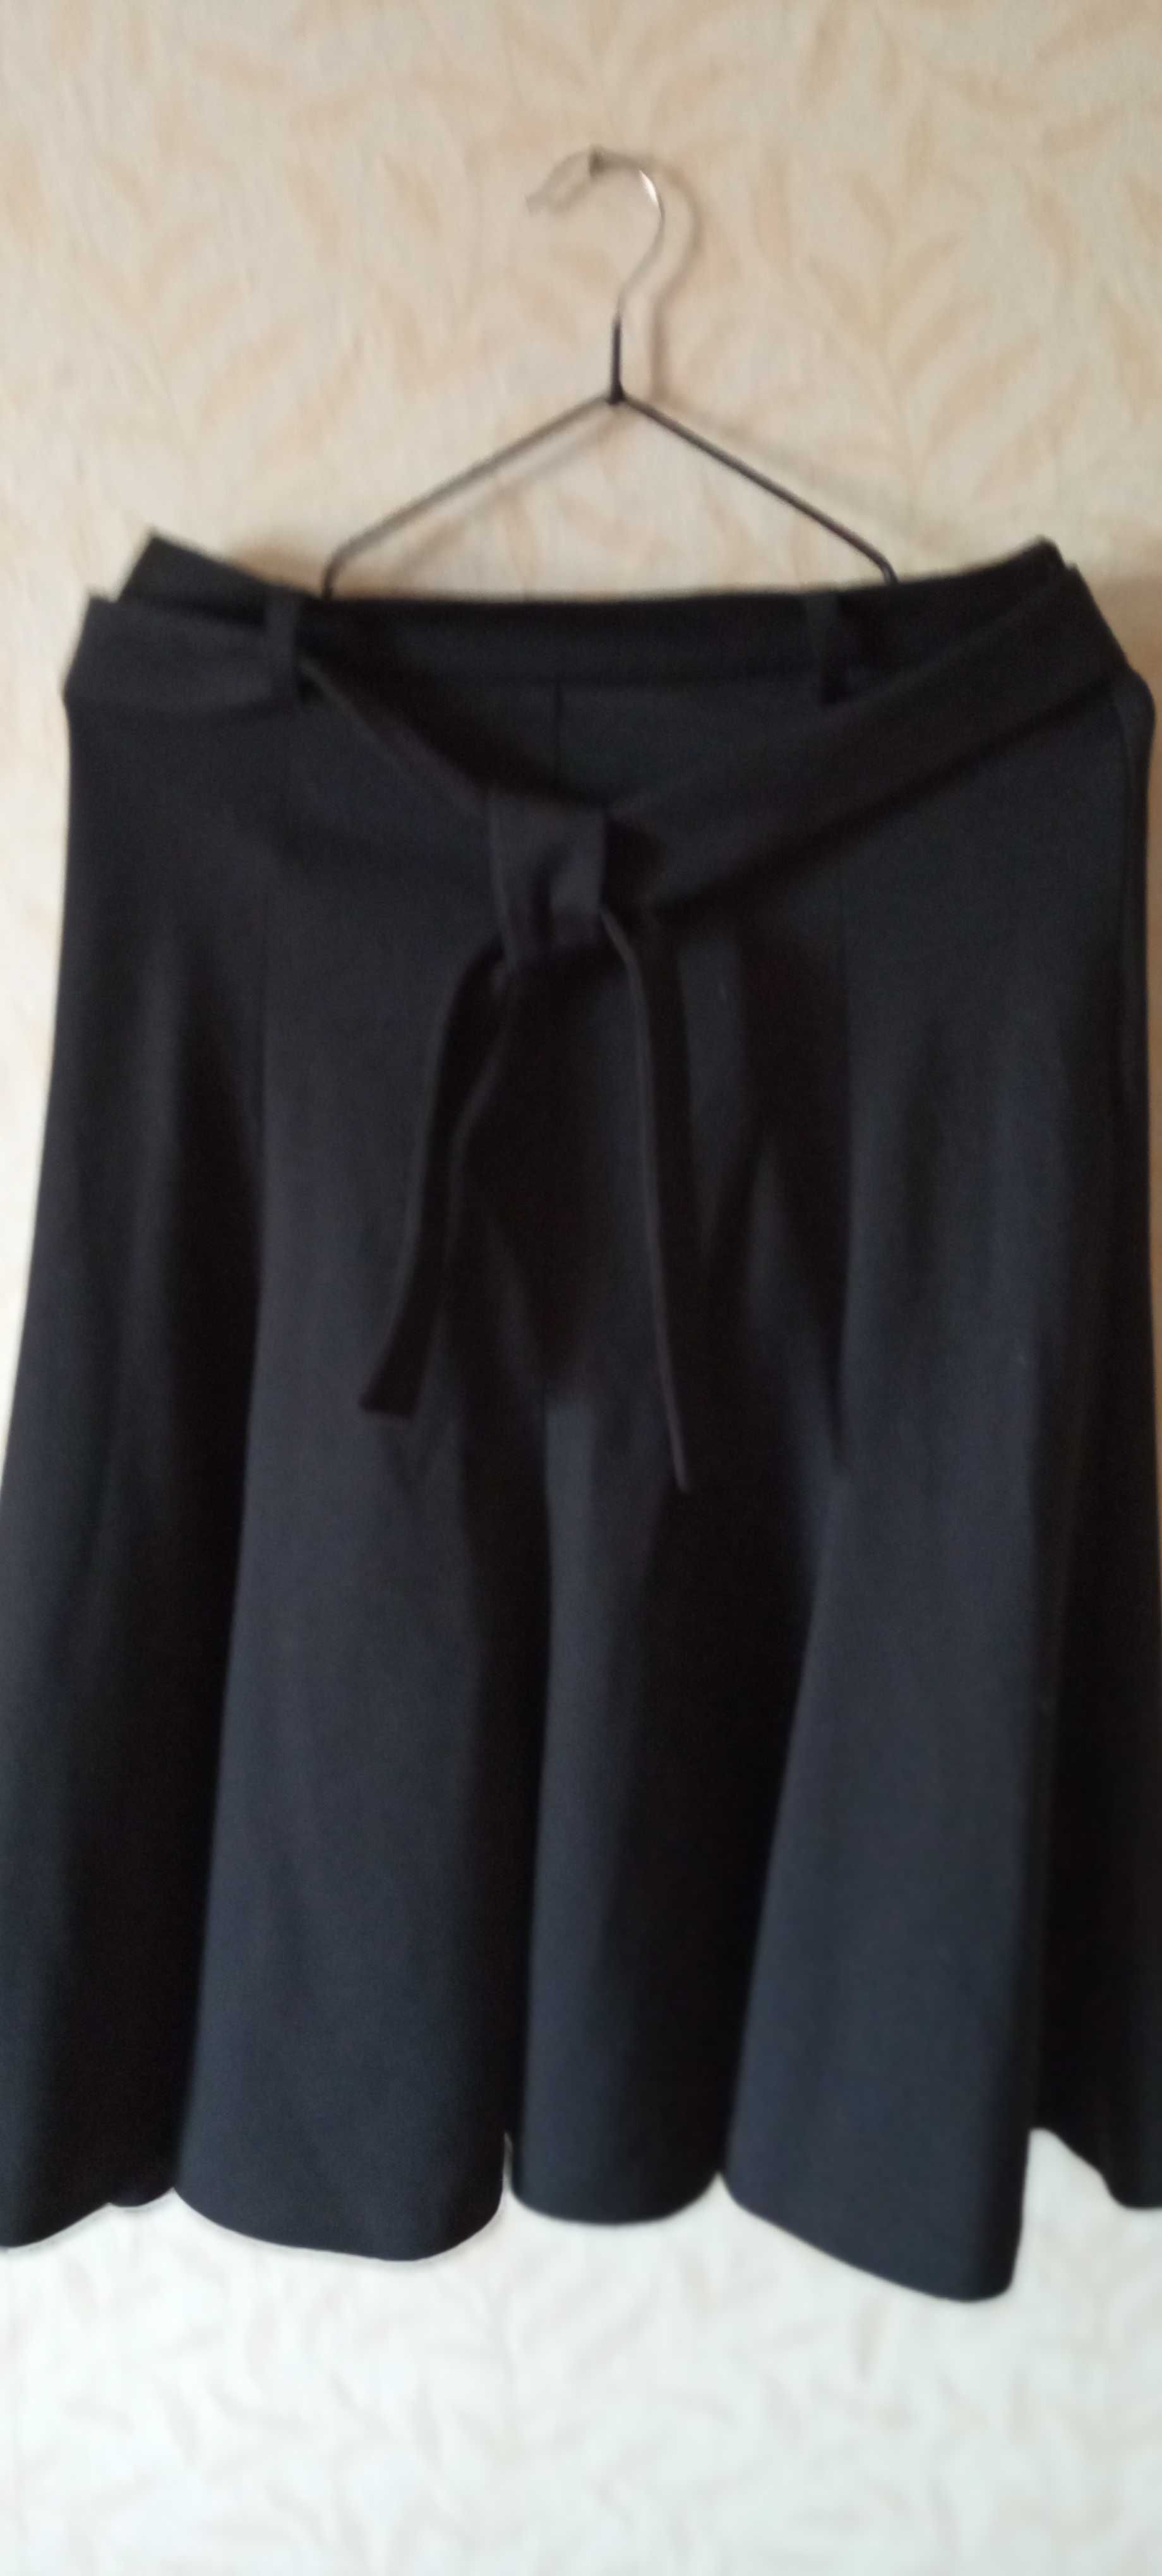 Жіночий одяг. Класична чорна юбка від ZARA BASIK, розмір Xs,24